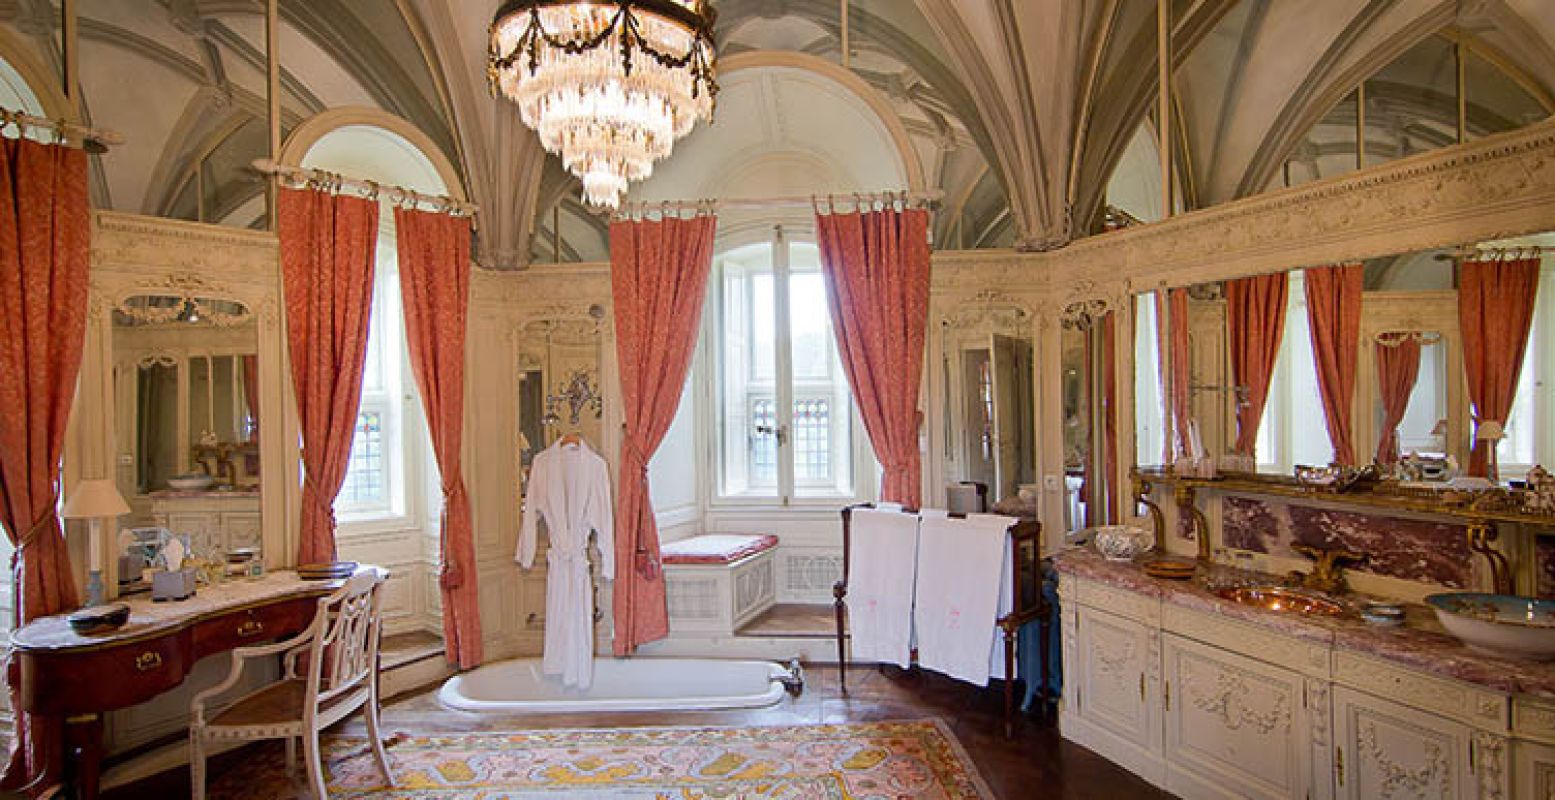 Welke celebrity verbleef er in deze prachtige badkamer? Foto: Kasteel de Haar Utrecht.